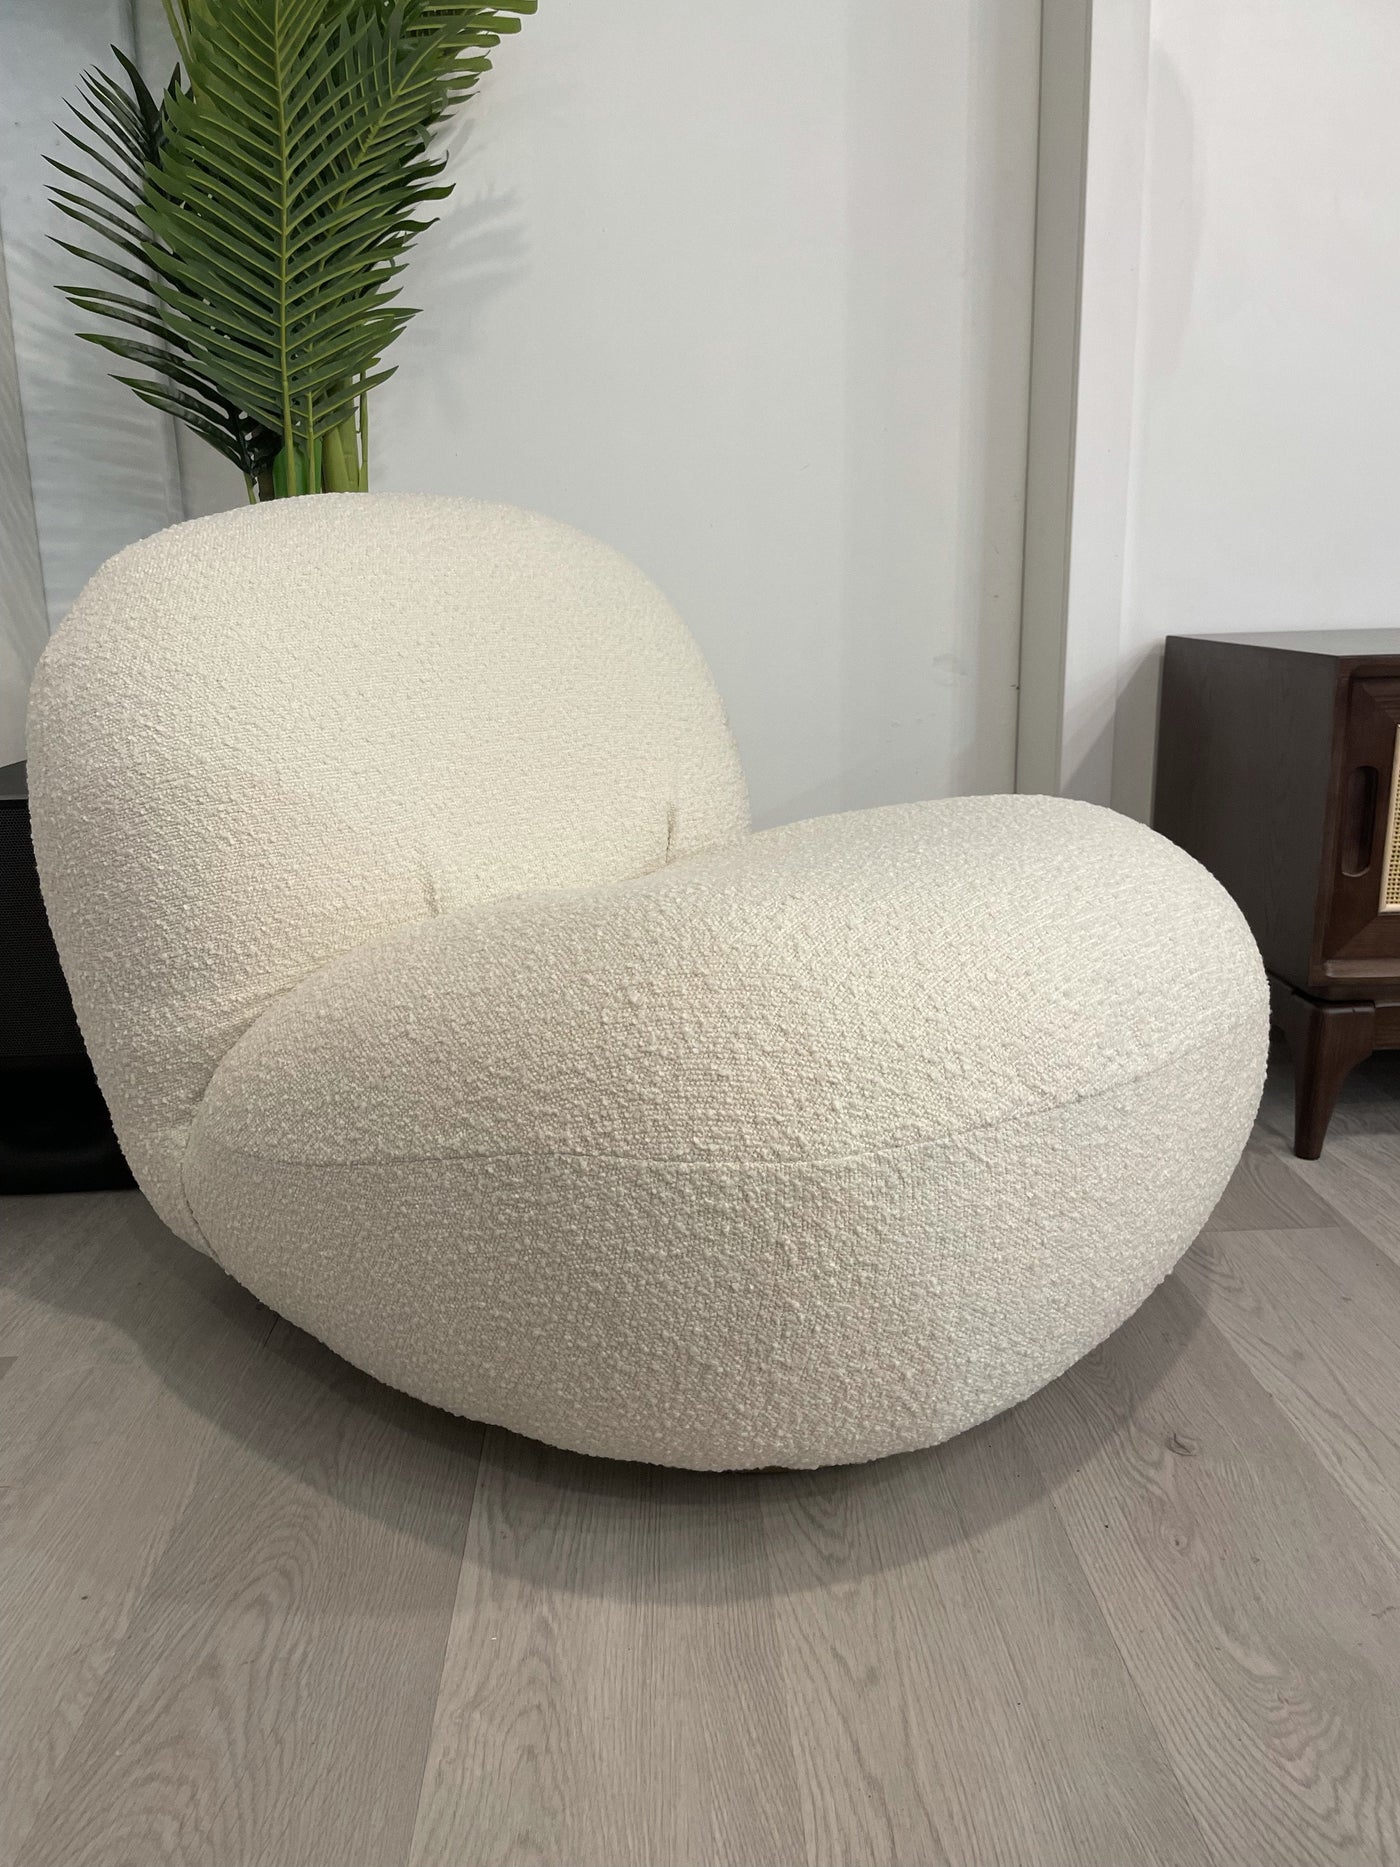 Pacha lounge chair - Retro Modern Designs